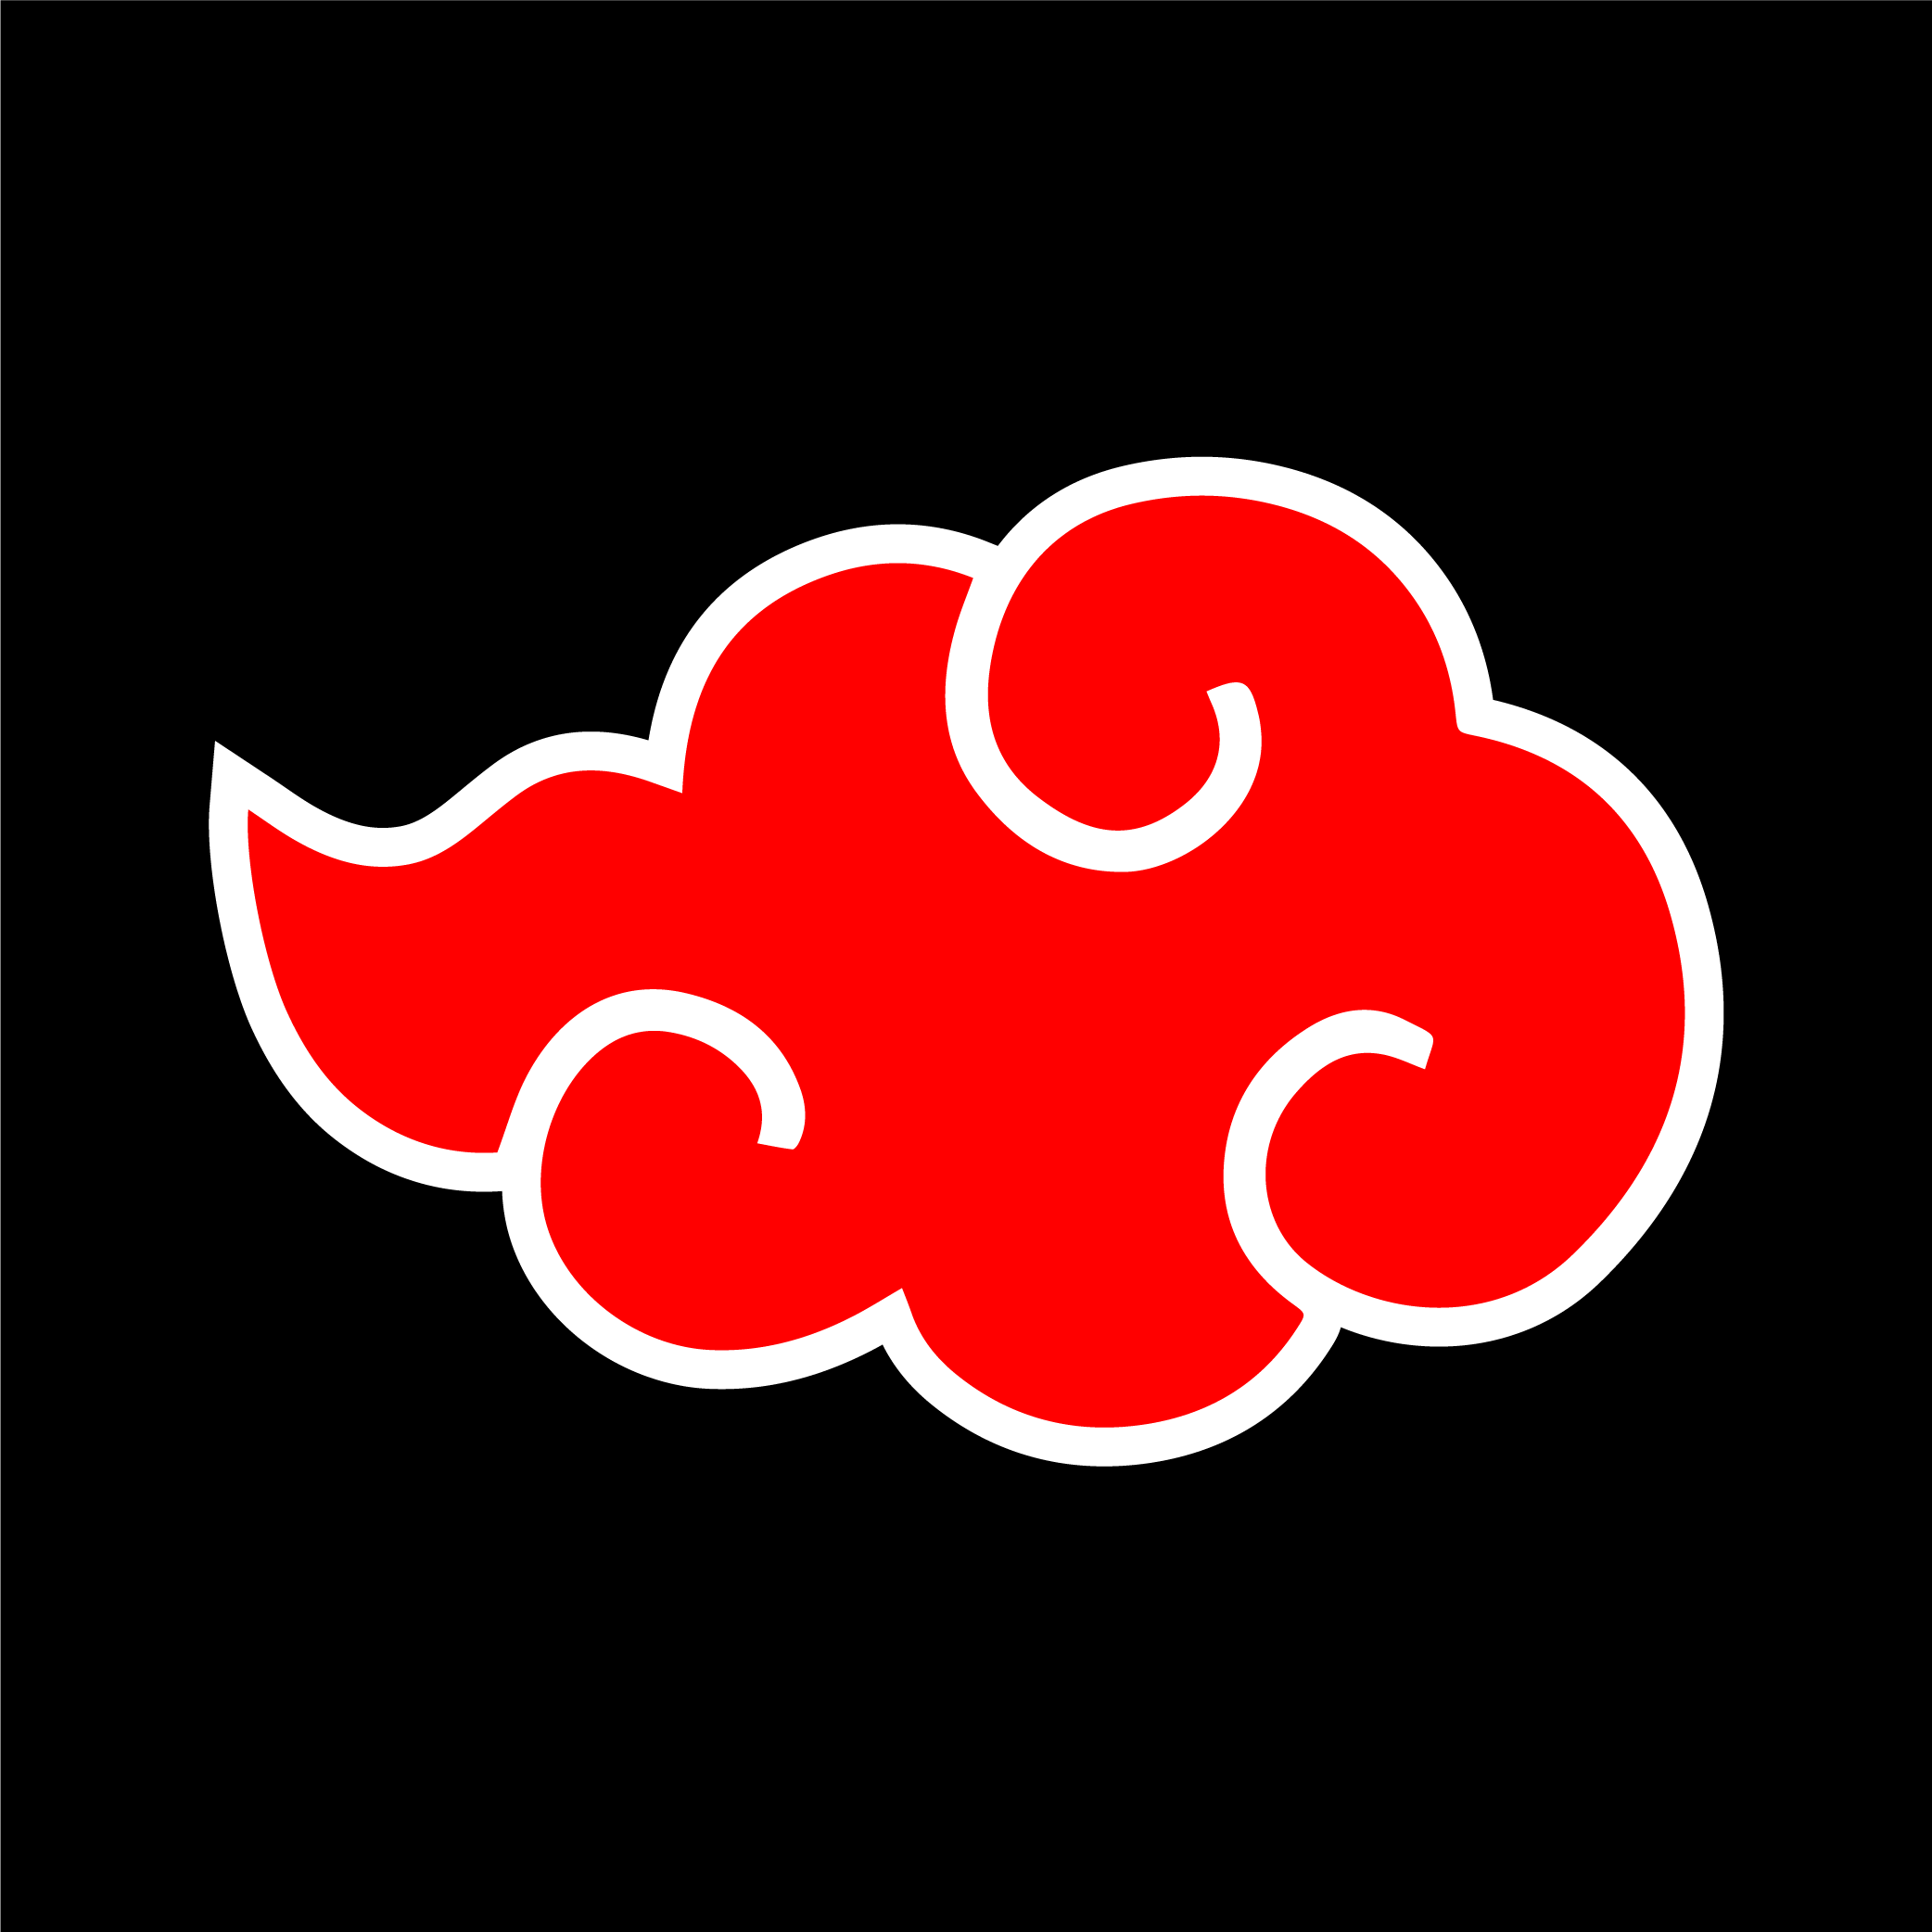 Akatsuki's logo